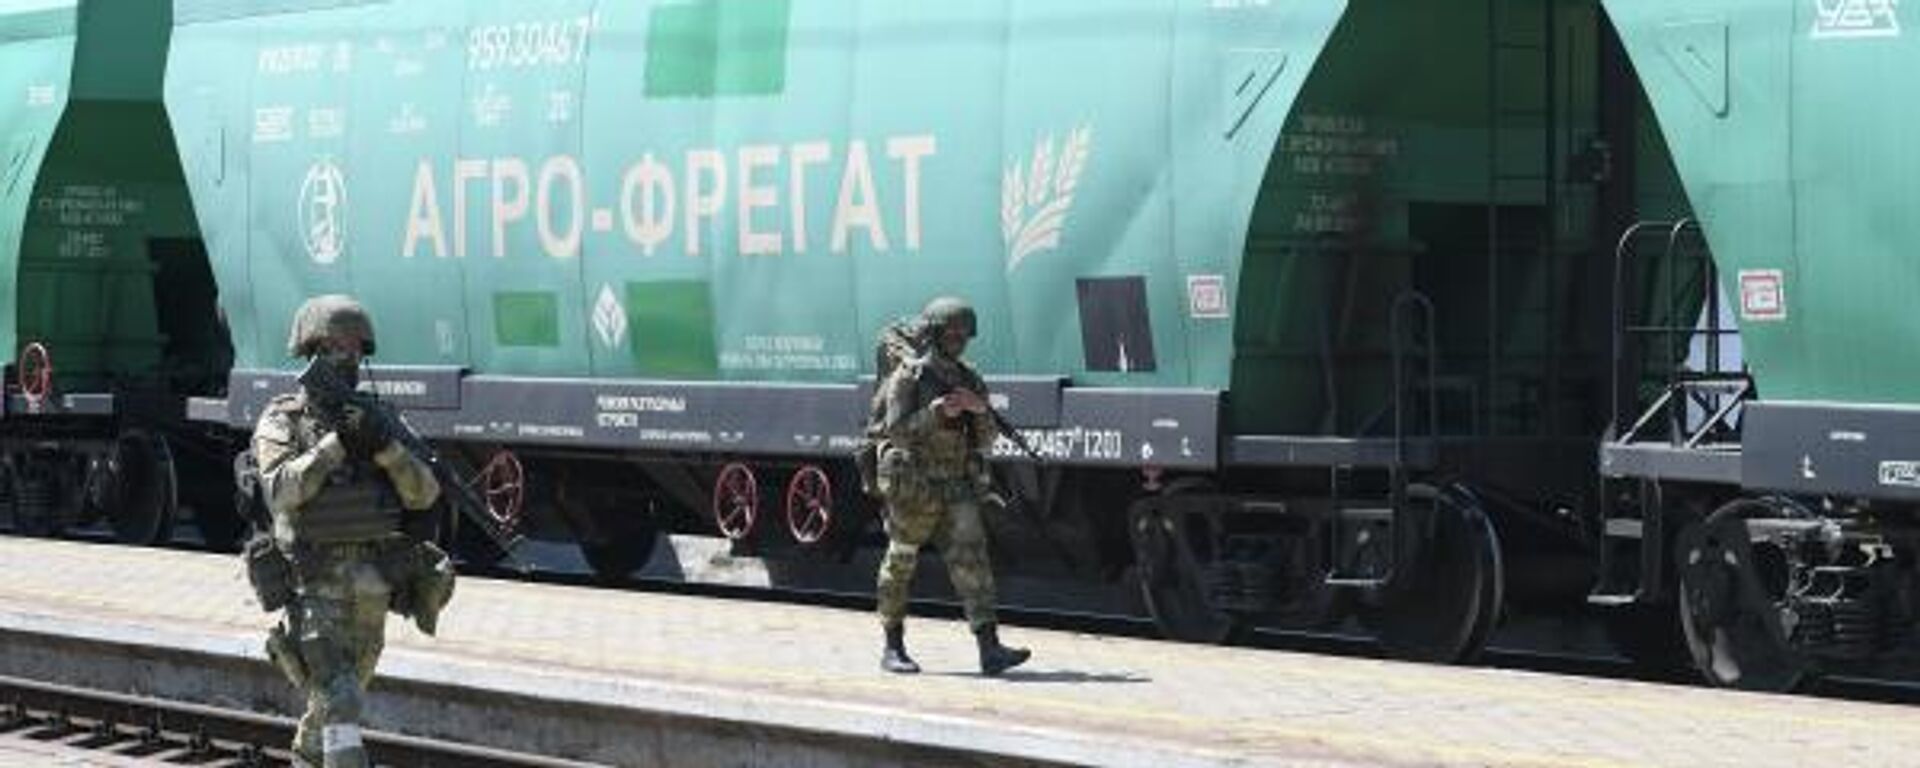 Militares guardam em uma plataforma da estação ferroviária de Melitopol durante a operação militar da Rússia na Ucrânia, em Melitopol, região de Zaporozhie, 6 de junho de 2022 - Sputnik Brasil, 1920, 10.11.2022